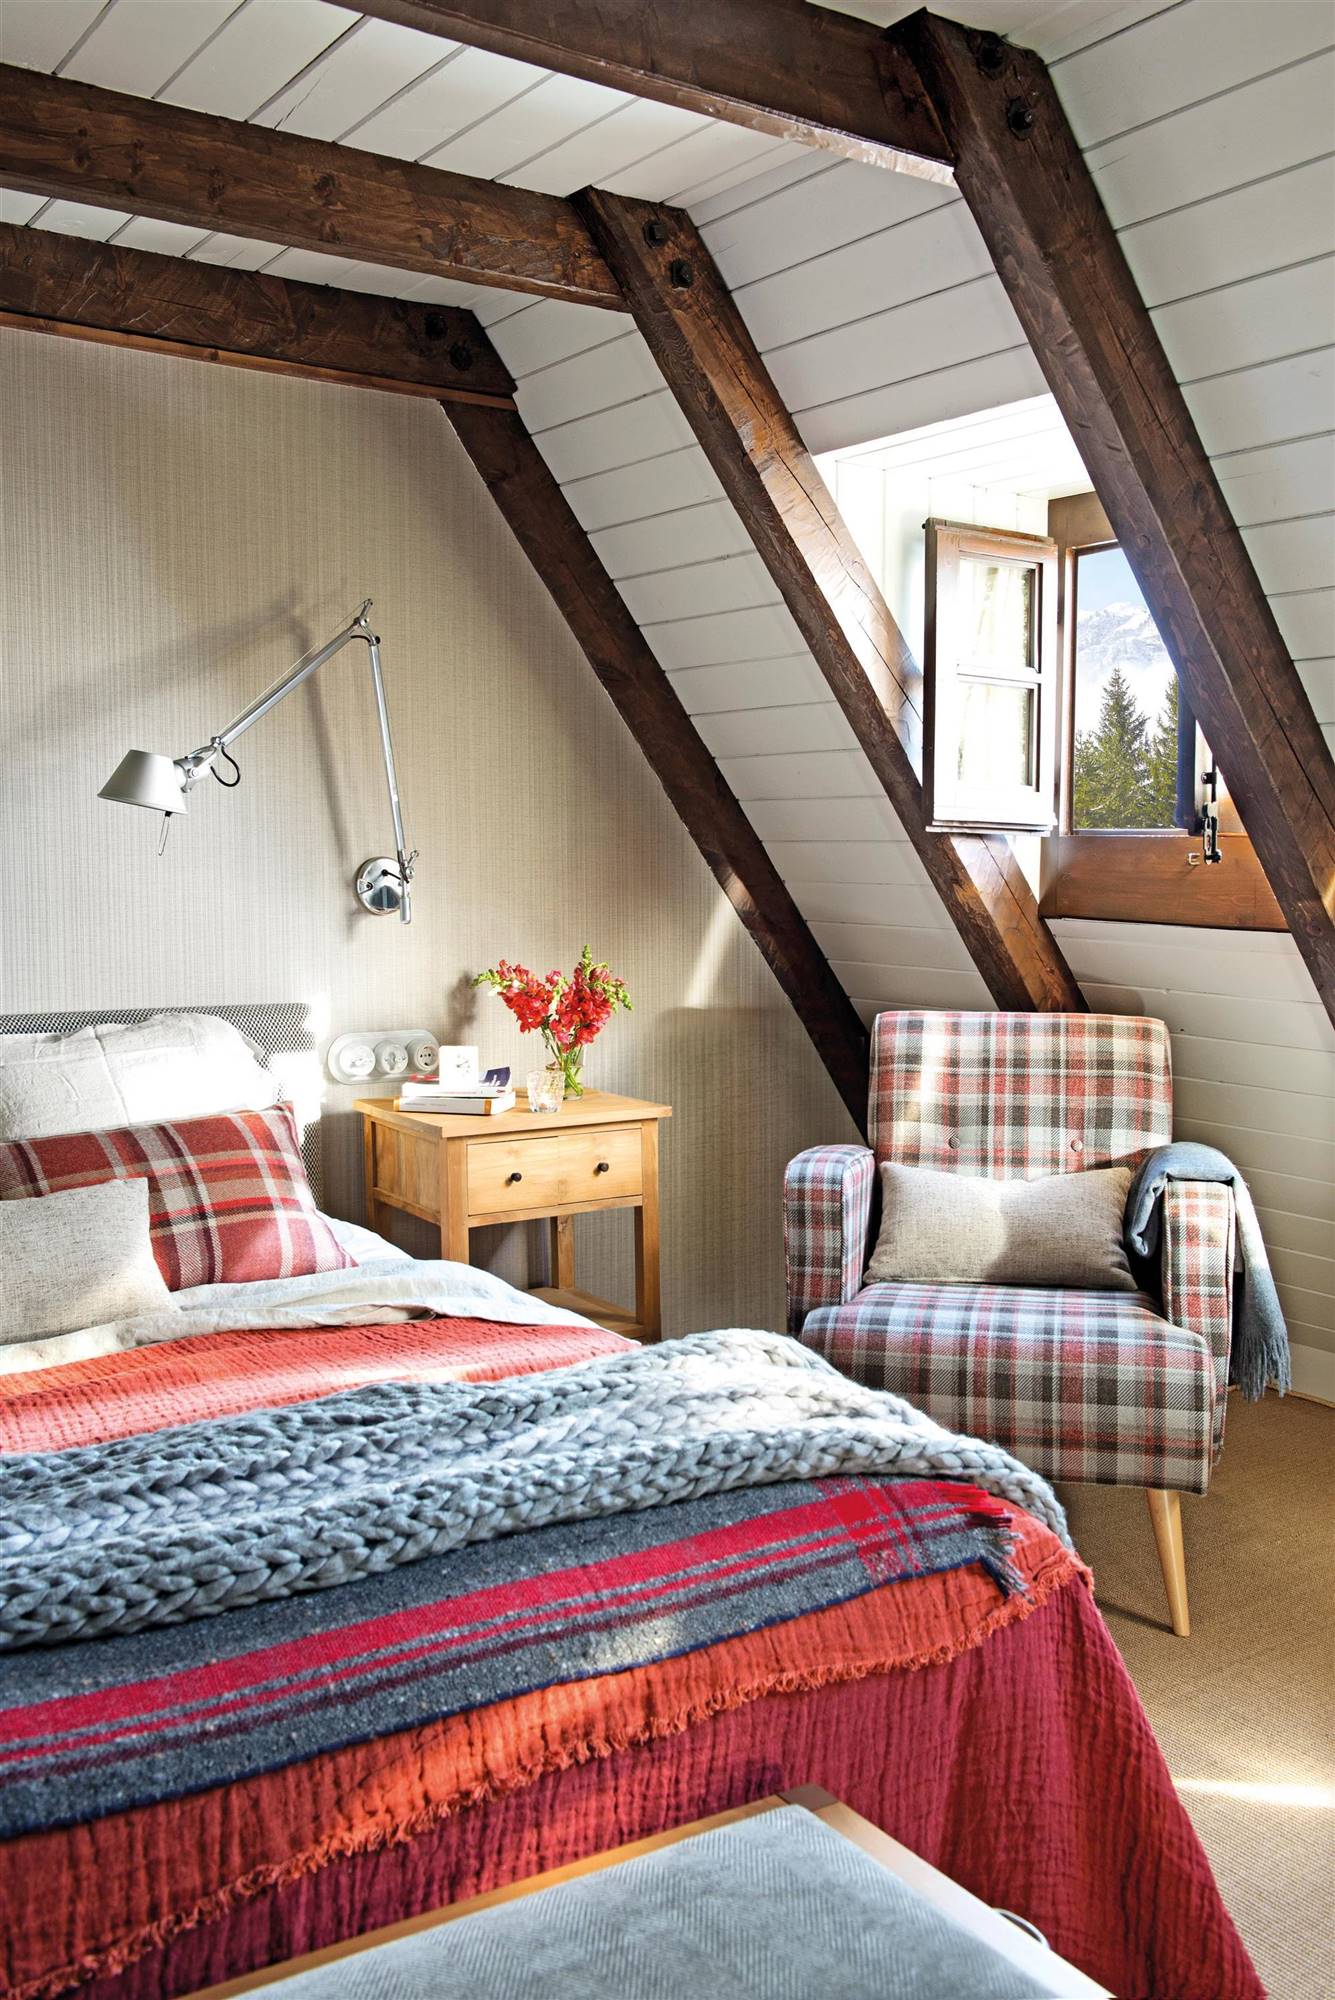 00520083 Dormitorio con butaca con tapicería de cuadros y ropa de cama en tonos rojos y azules